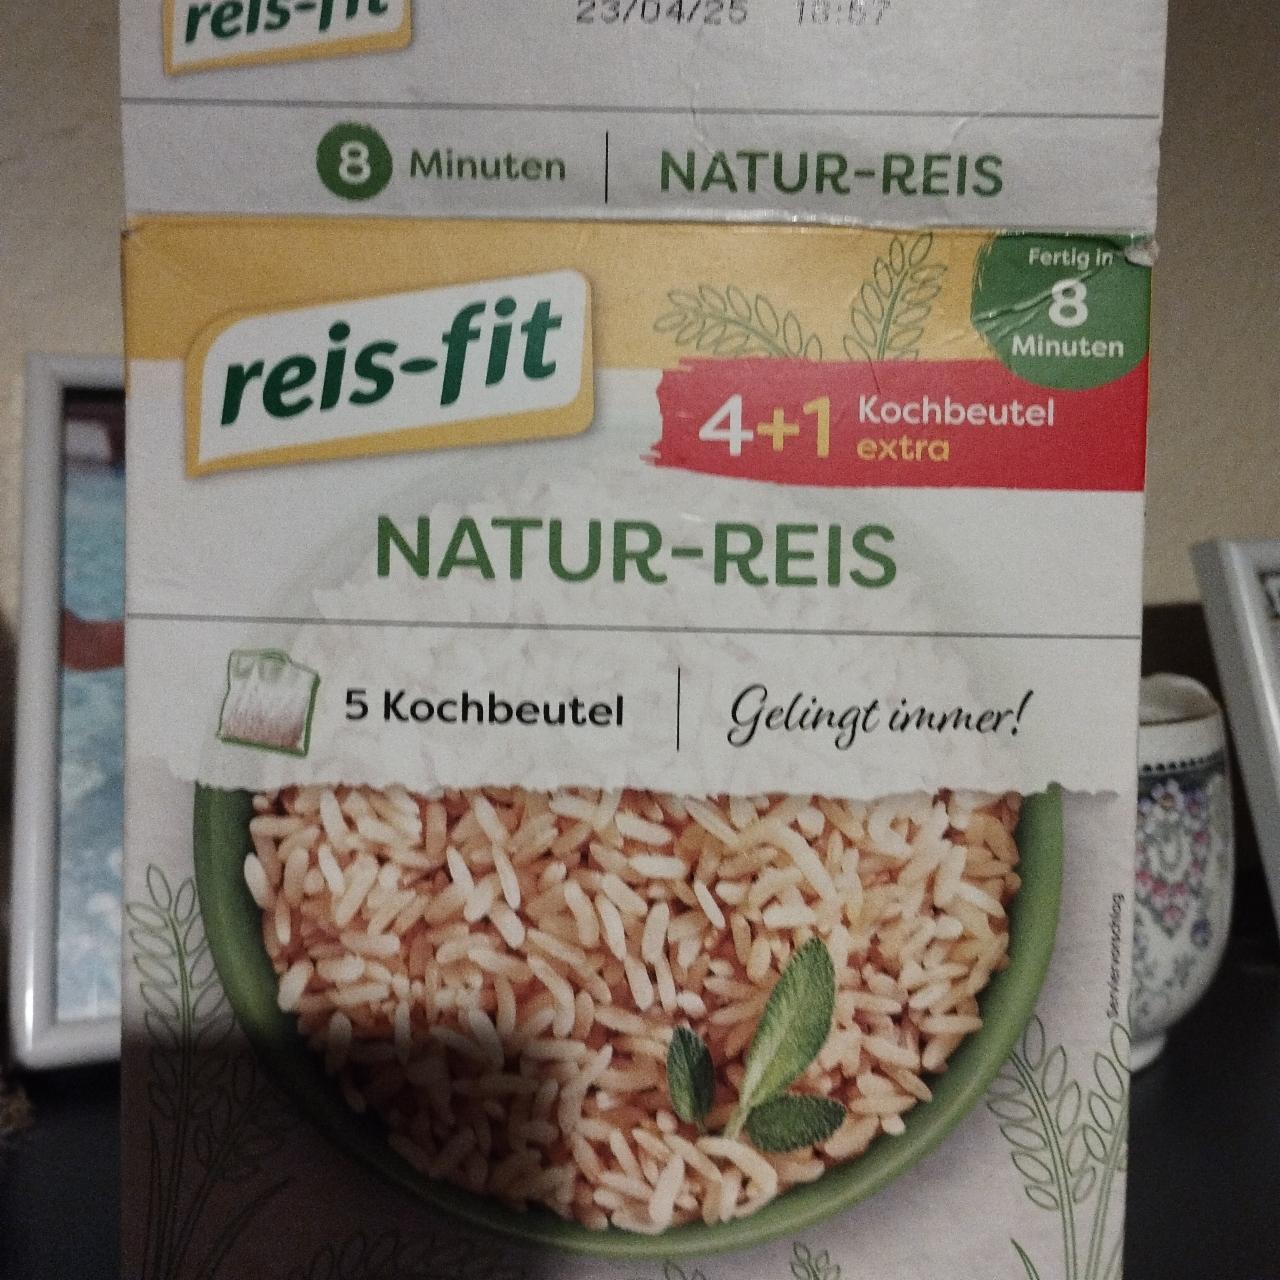 Фото - рис герм в пакетиках длиннозерный Reis-fit